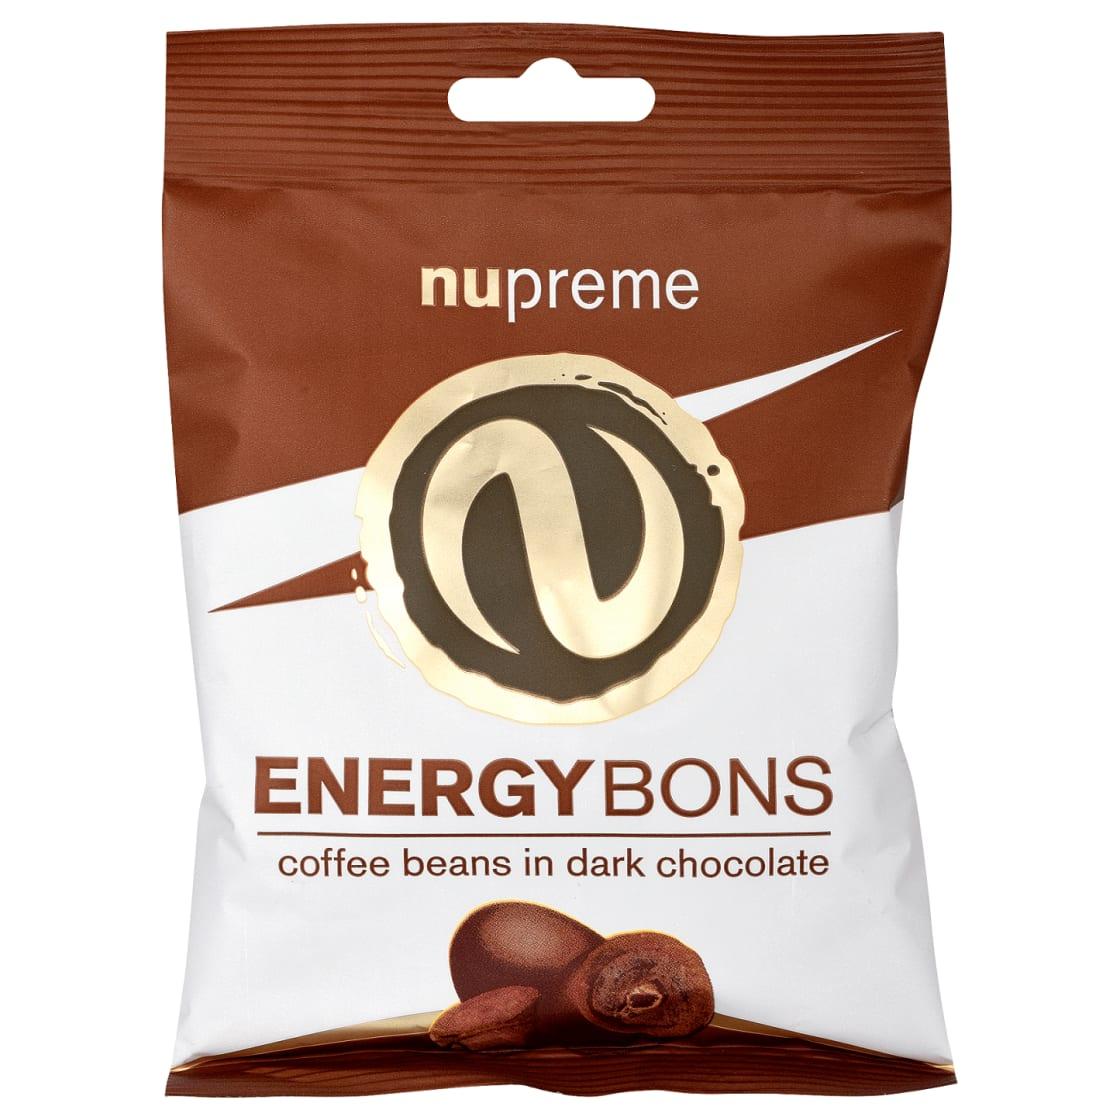 Fotografie - Nupreme Energybons coffee beans in dark chocolate